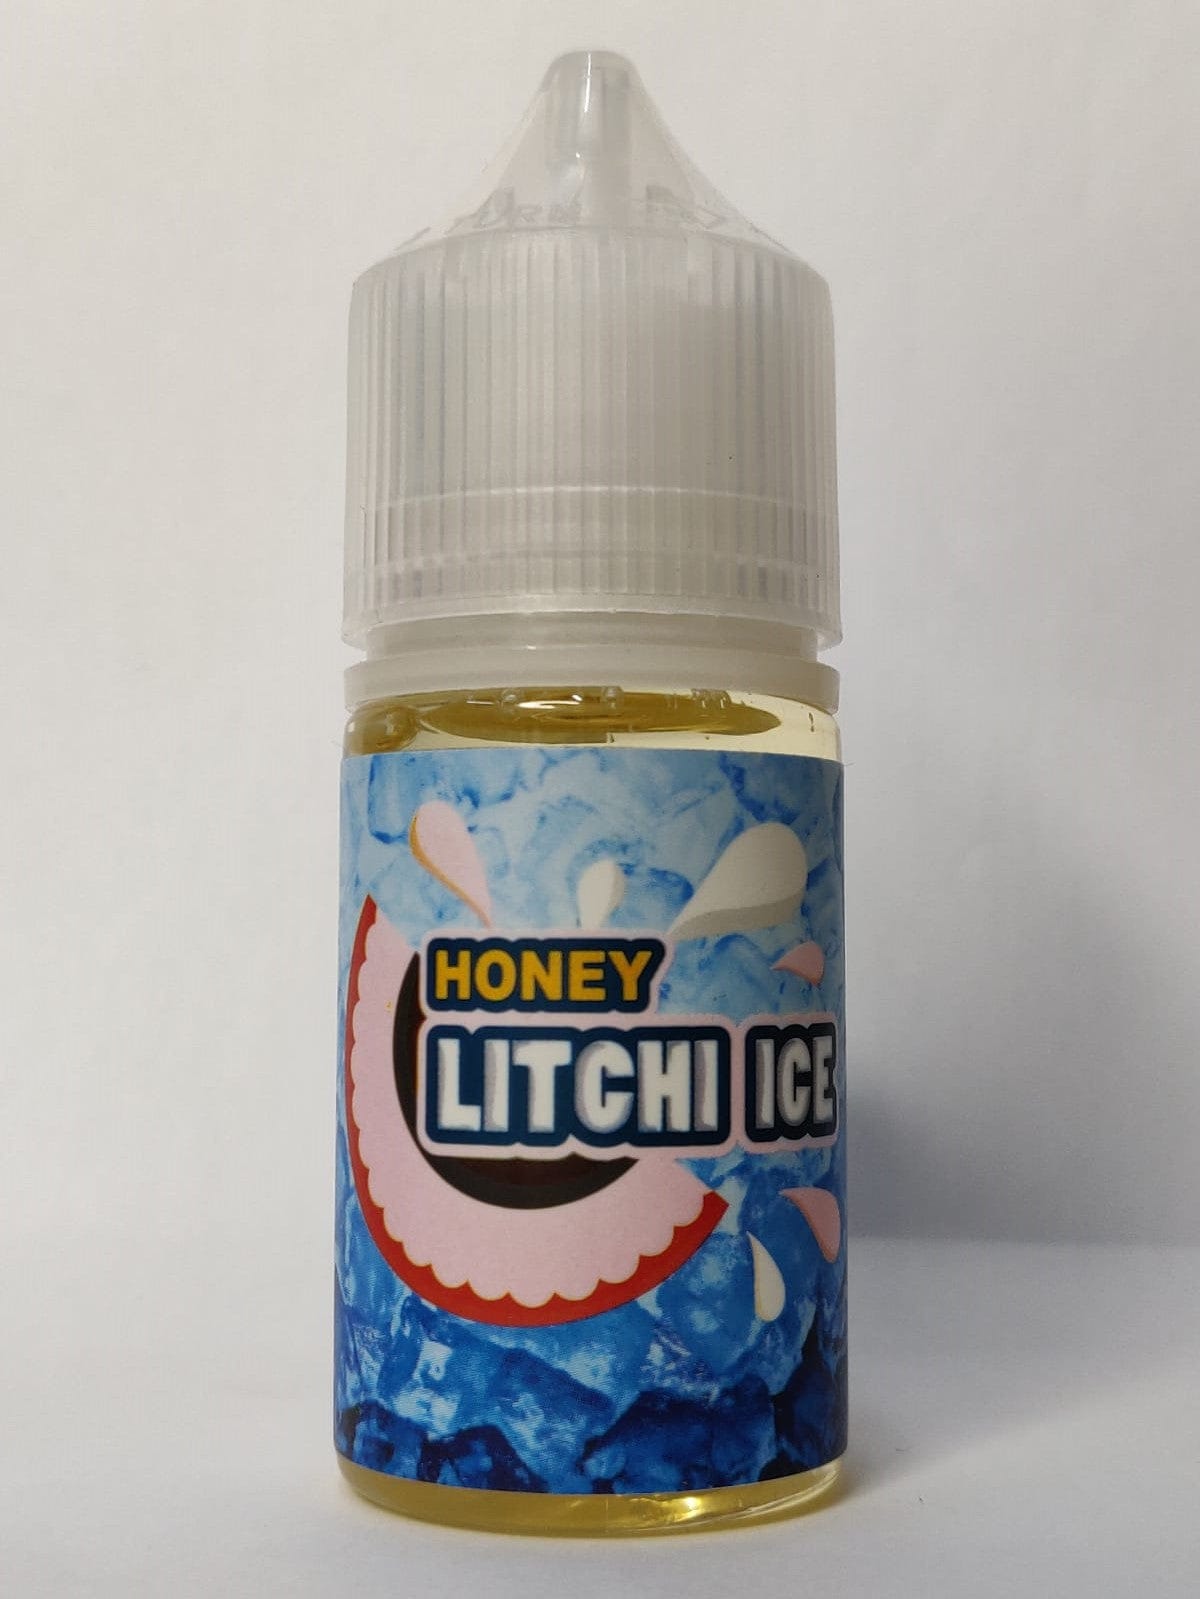 Litchi Ice By Tokyo Salt 30 ml Honey Series At Best Price In Pakistan